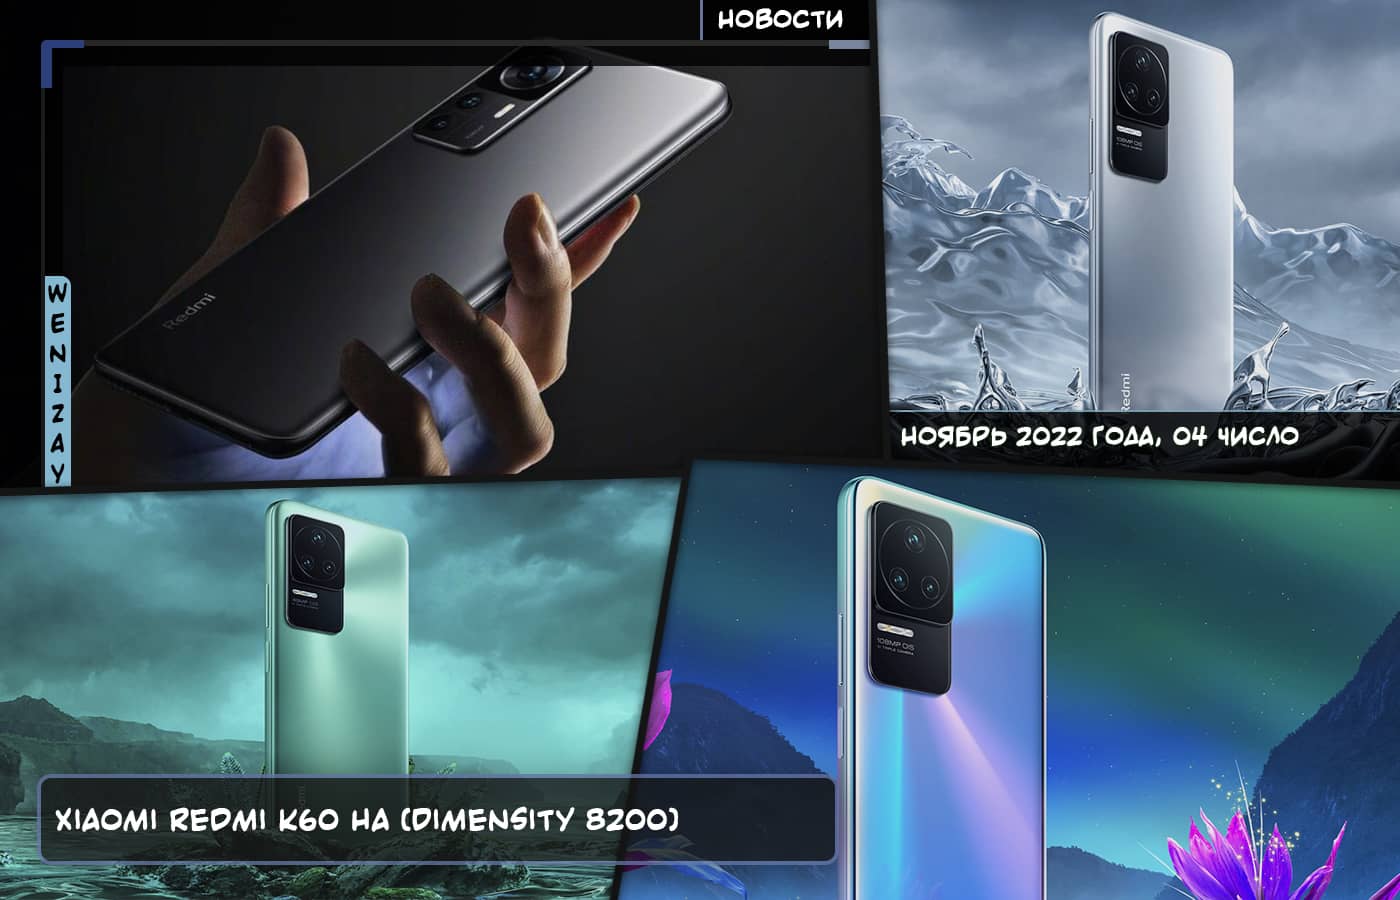 Xiaomi Redmi K60 будет поставляться с новым Dimensity 8200, Новости мобильной техники